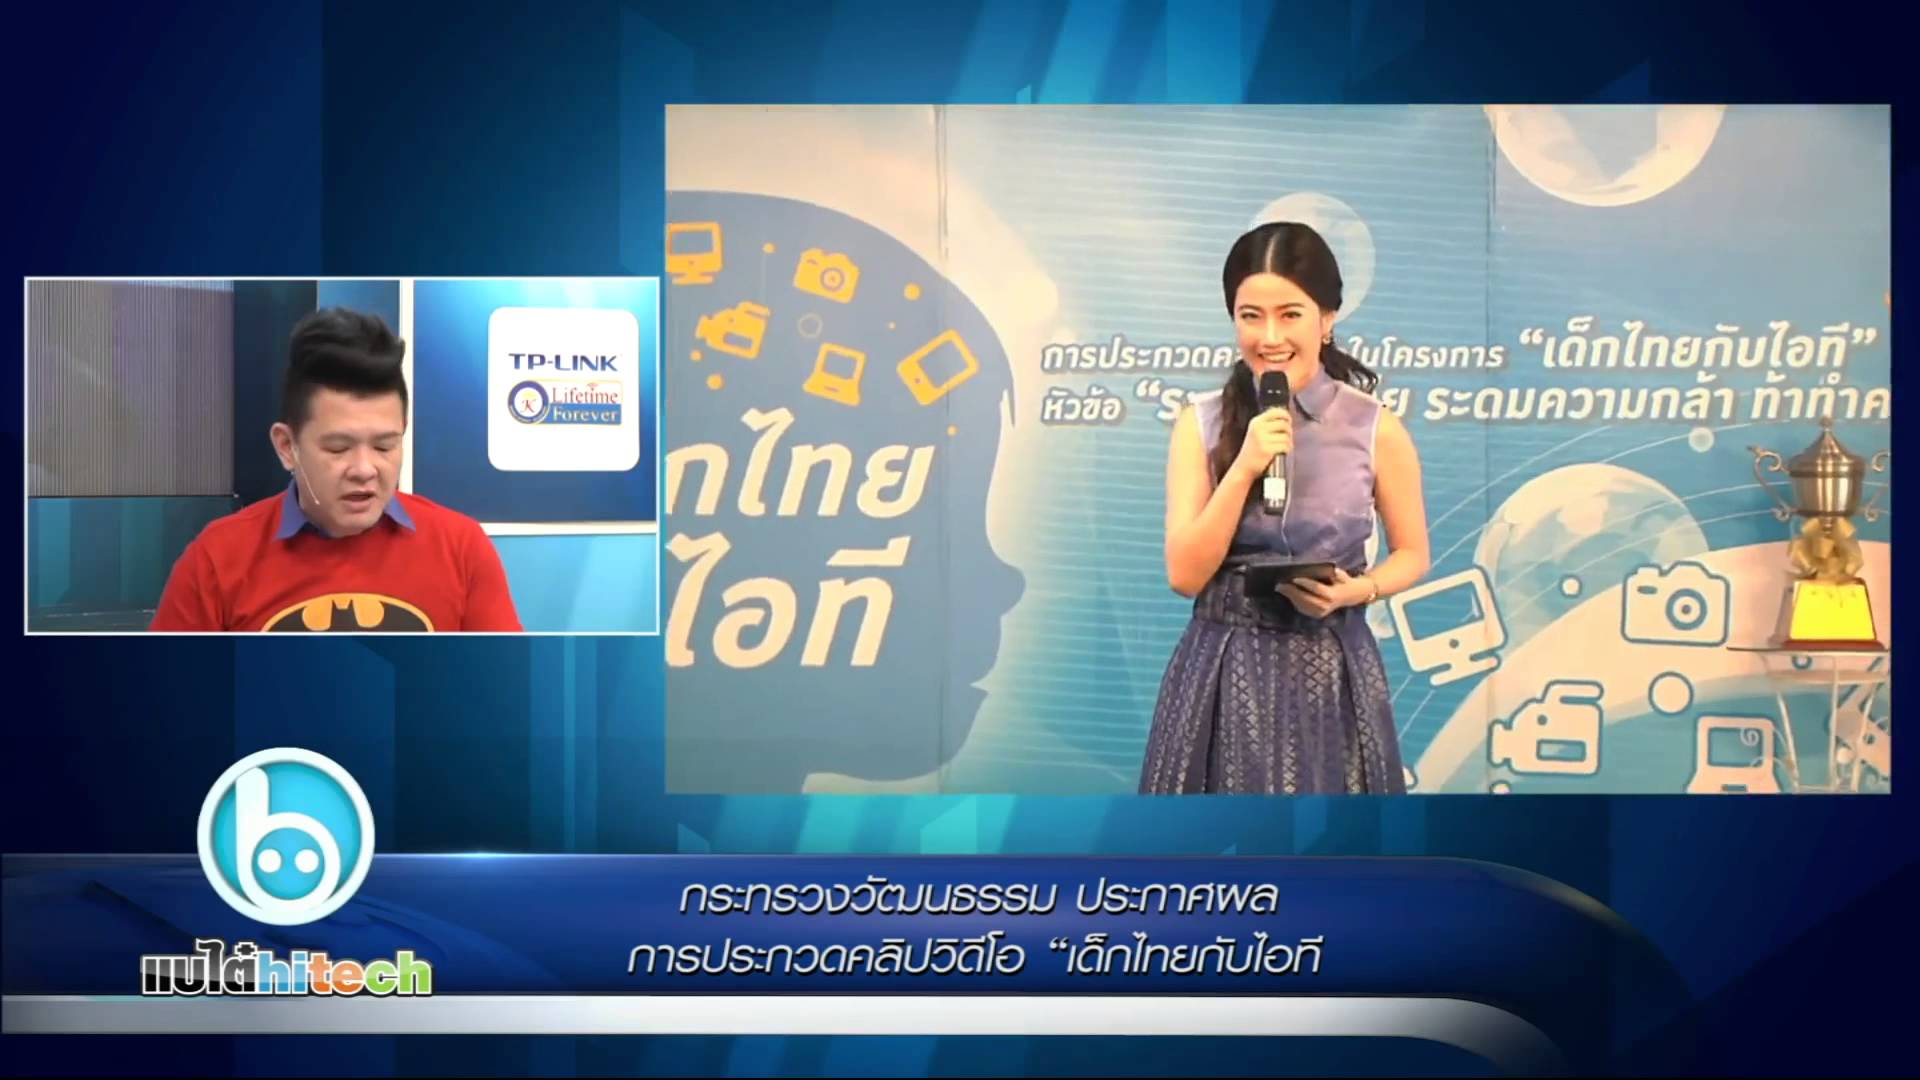 กระทรวงวัฒนธรรม ประกาศผลการประกวดคลิปวิดีโอ เด็กไทยกับไอที